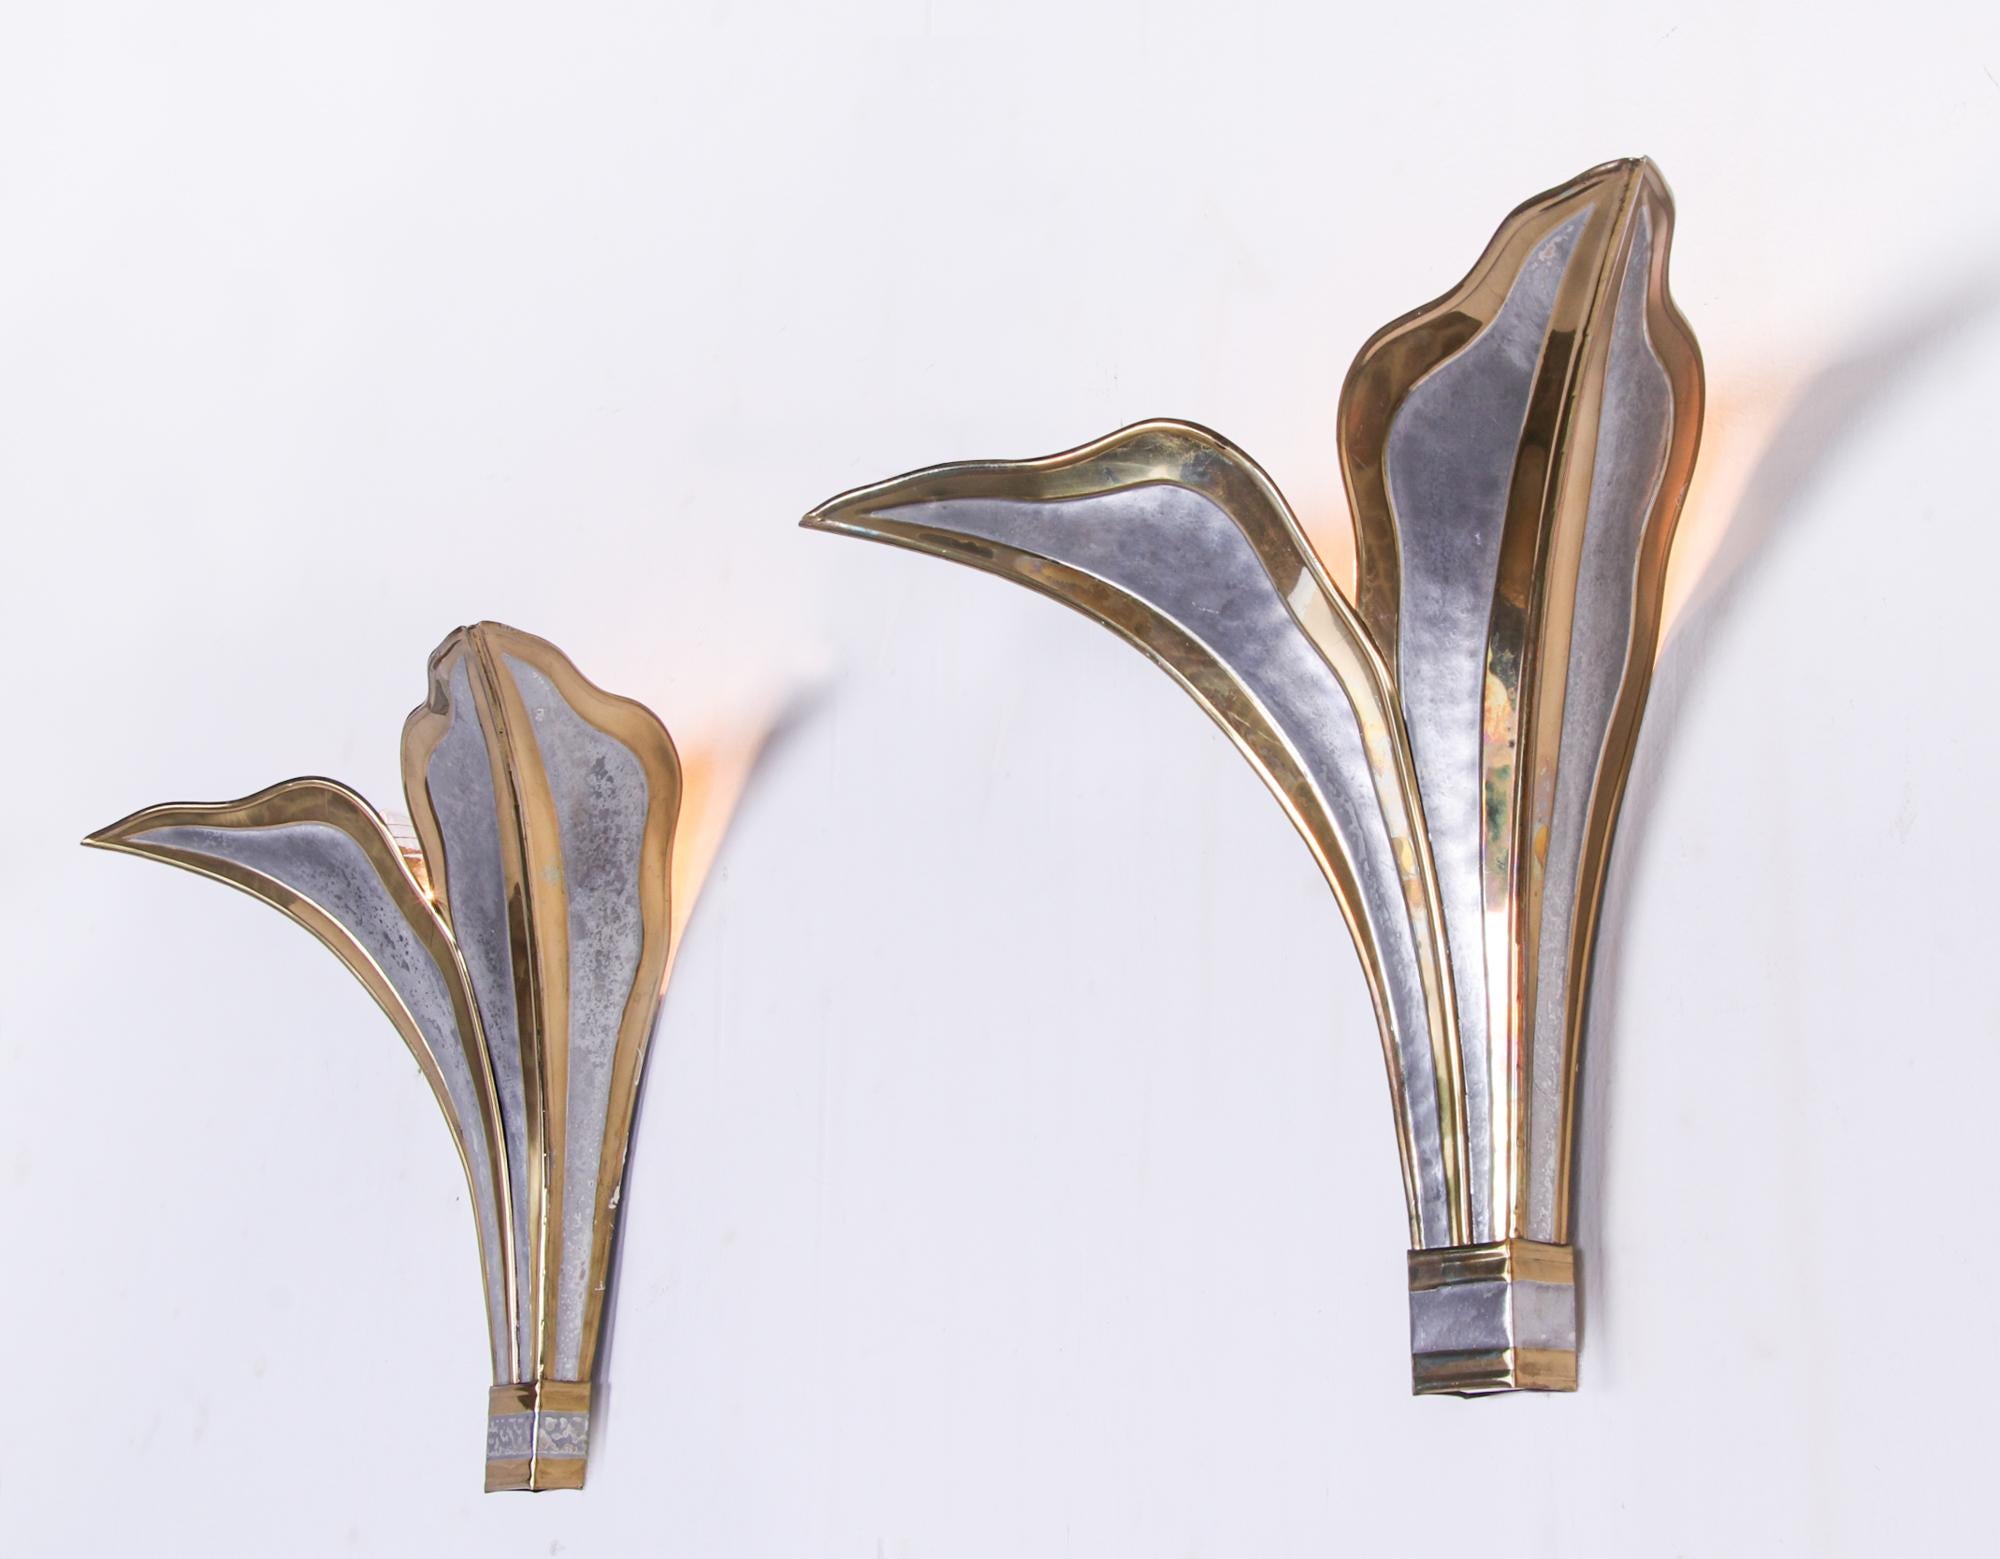 Elegantes Paar Blatt-Wandlampen in Gold und Silber aus handgefertigtem, gehämmertem Messing, entworfen von Henri Fernandez für Maison Honoré in Paris, Frankreich, 1970er Jahre. Diese außergewöhnlichen Leuchten haben einen unvergleichlich